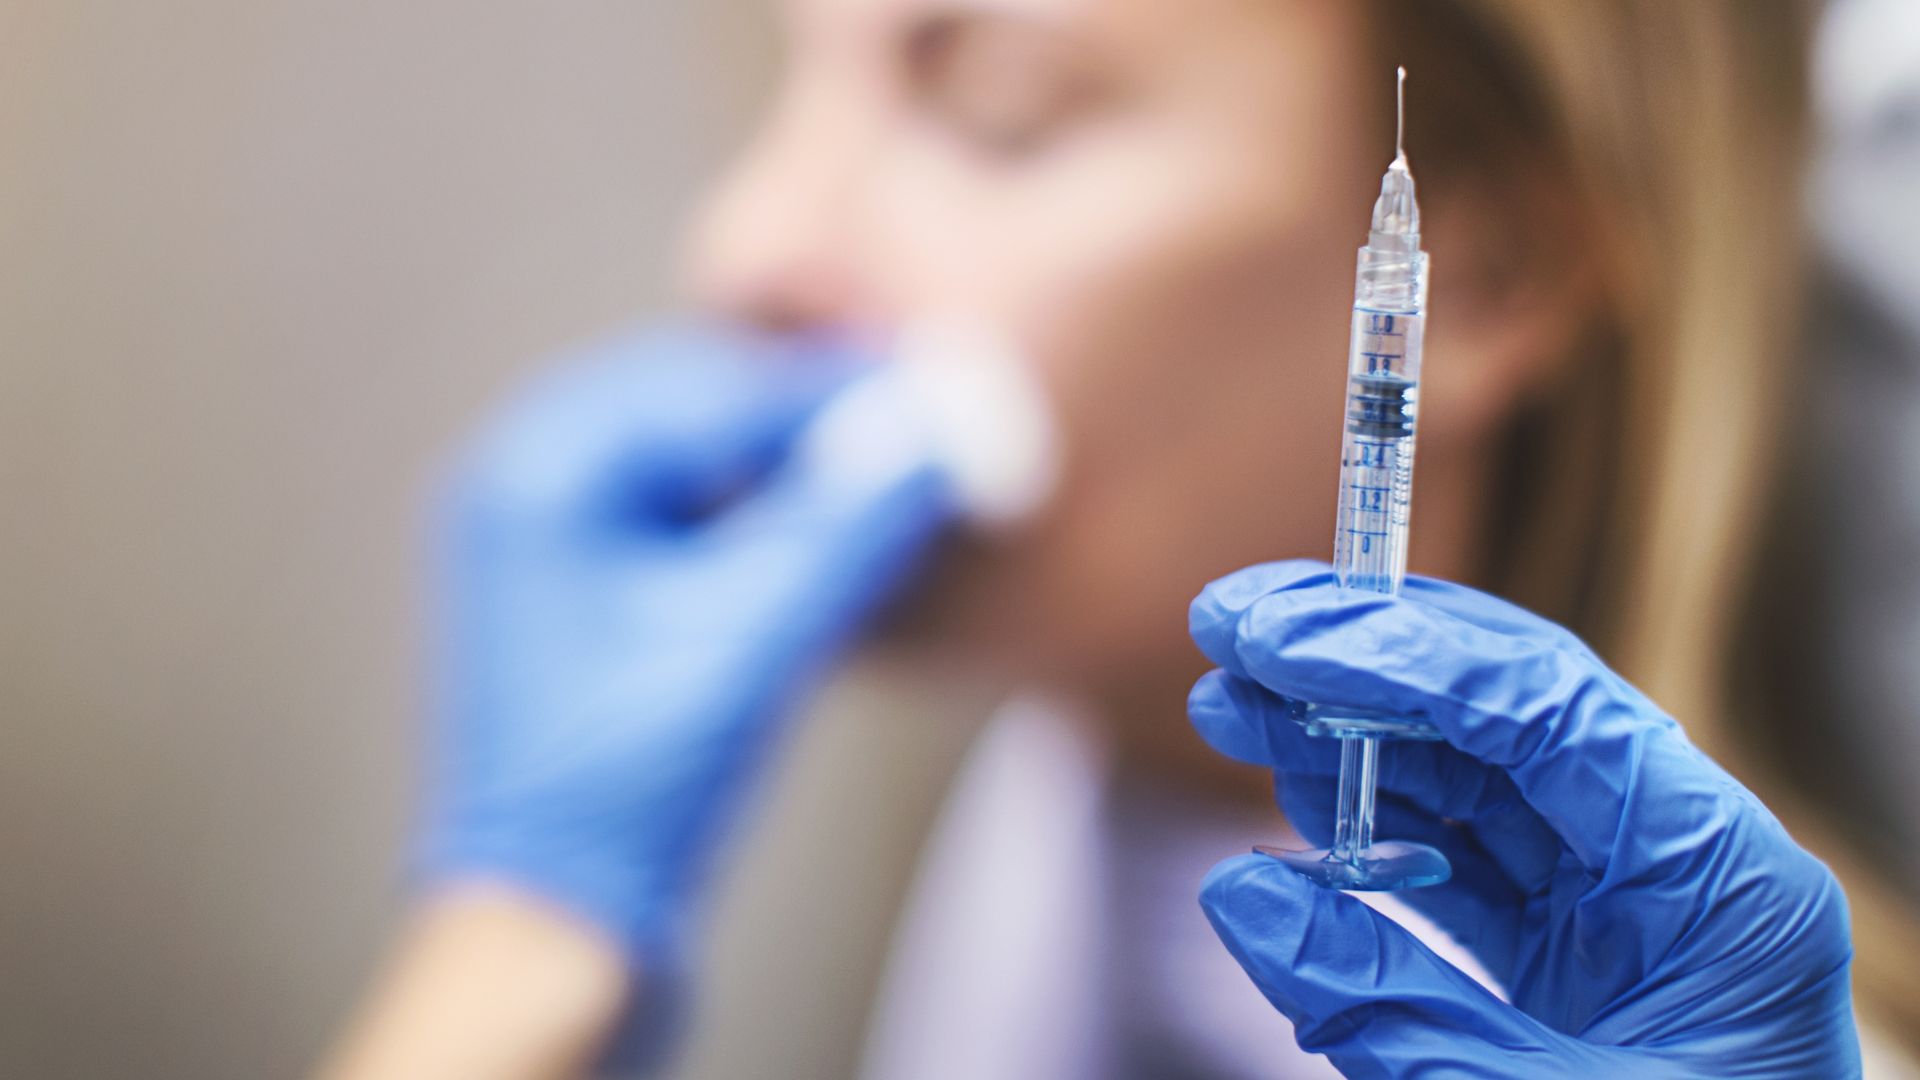 Le false iniezioni di Botox hanno fatto ammalare 22 persone, ricoverate in ospedale 11, avverte il CDC